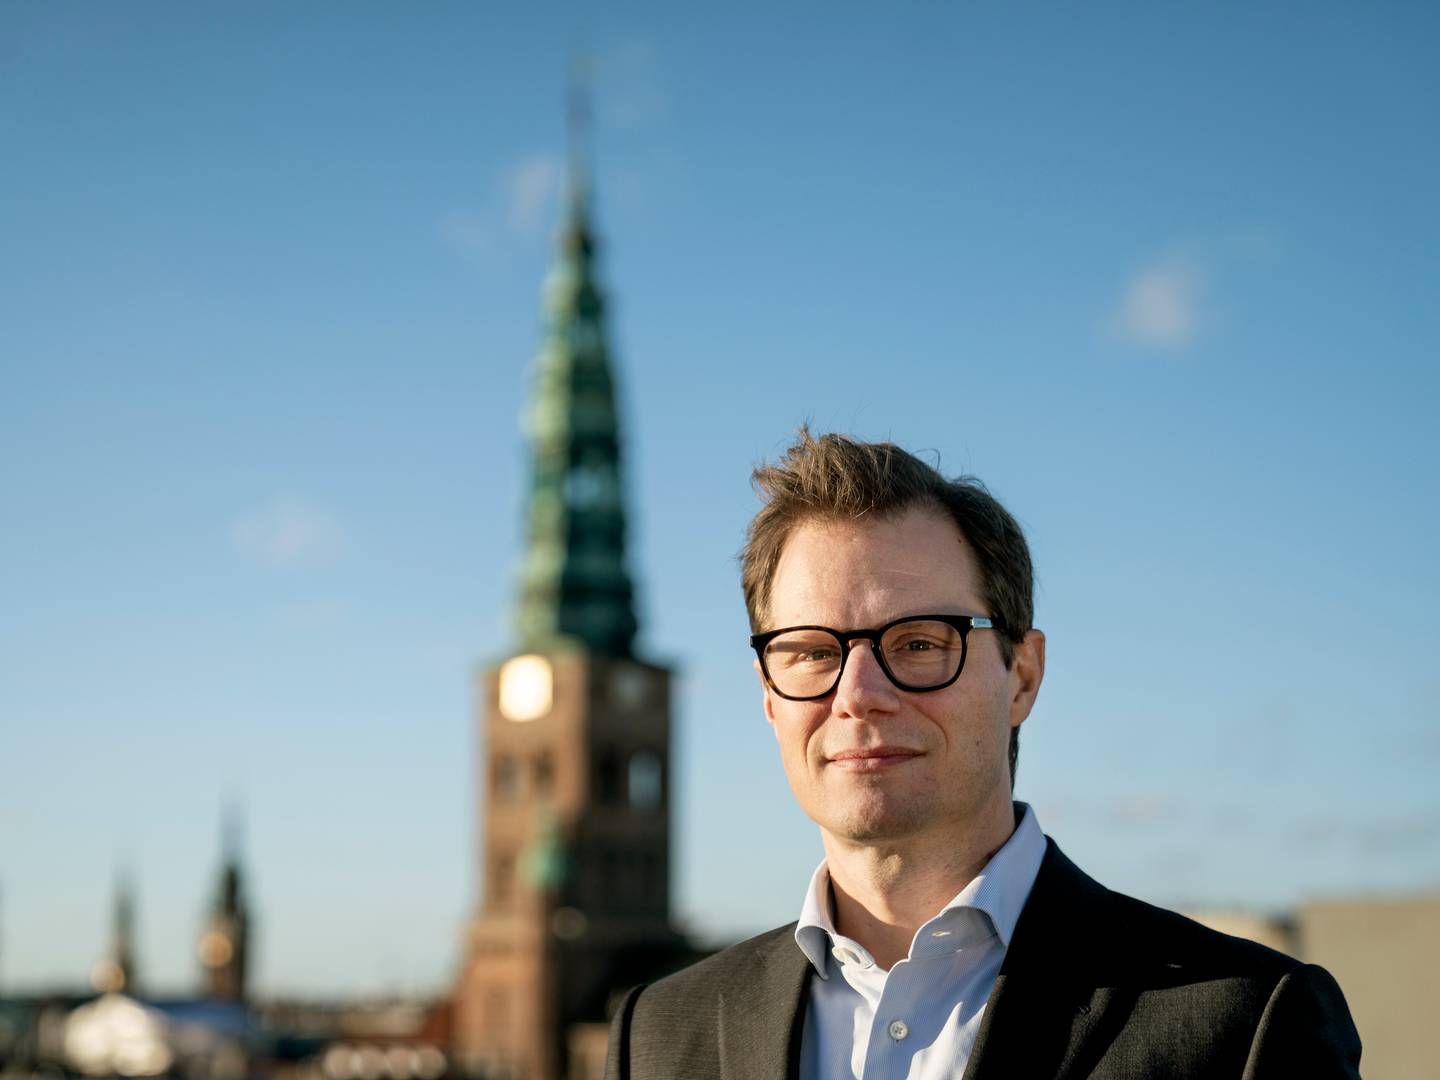 Carsten Egeriis er topchef for Danske Bank, som onsdag har præsenteret ny strategi. | Photo: Stine Bidstrup/Carsten Egeriis/Ritzau Scanpix